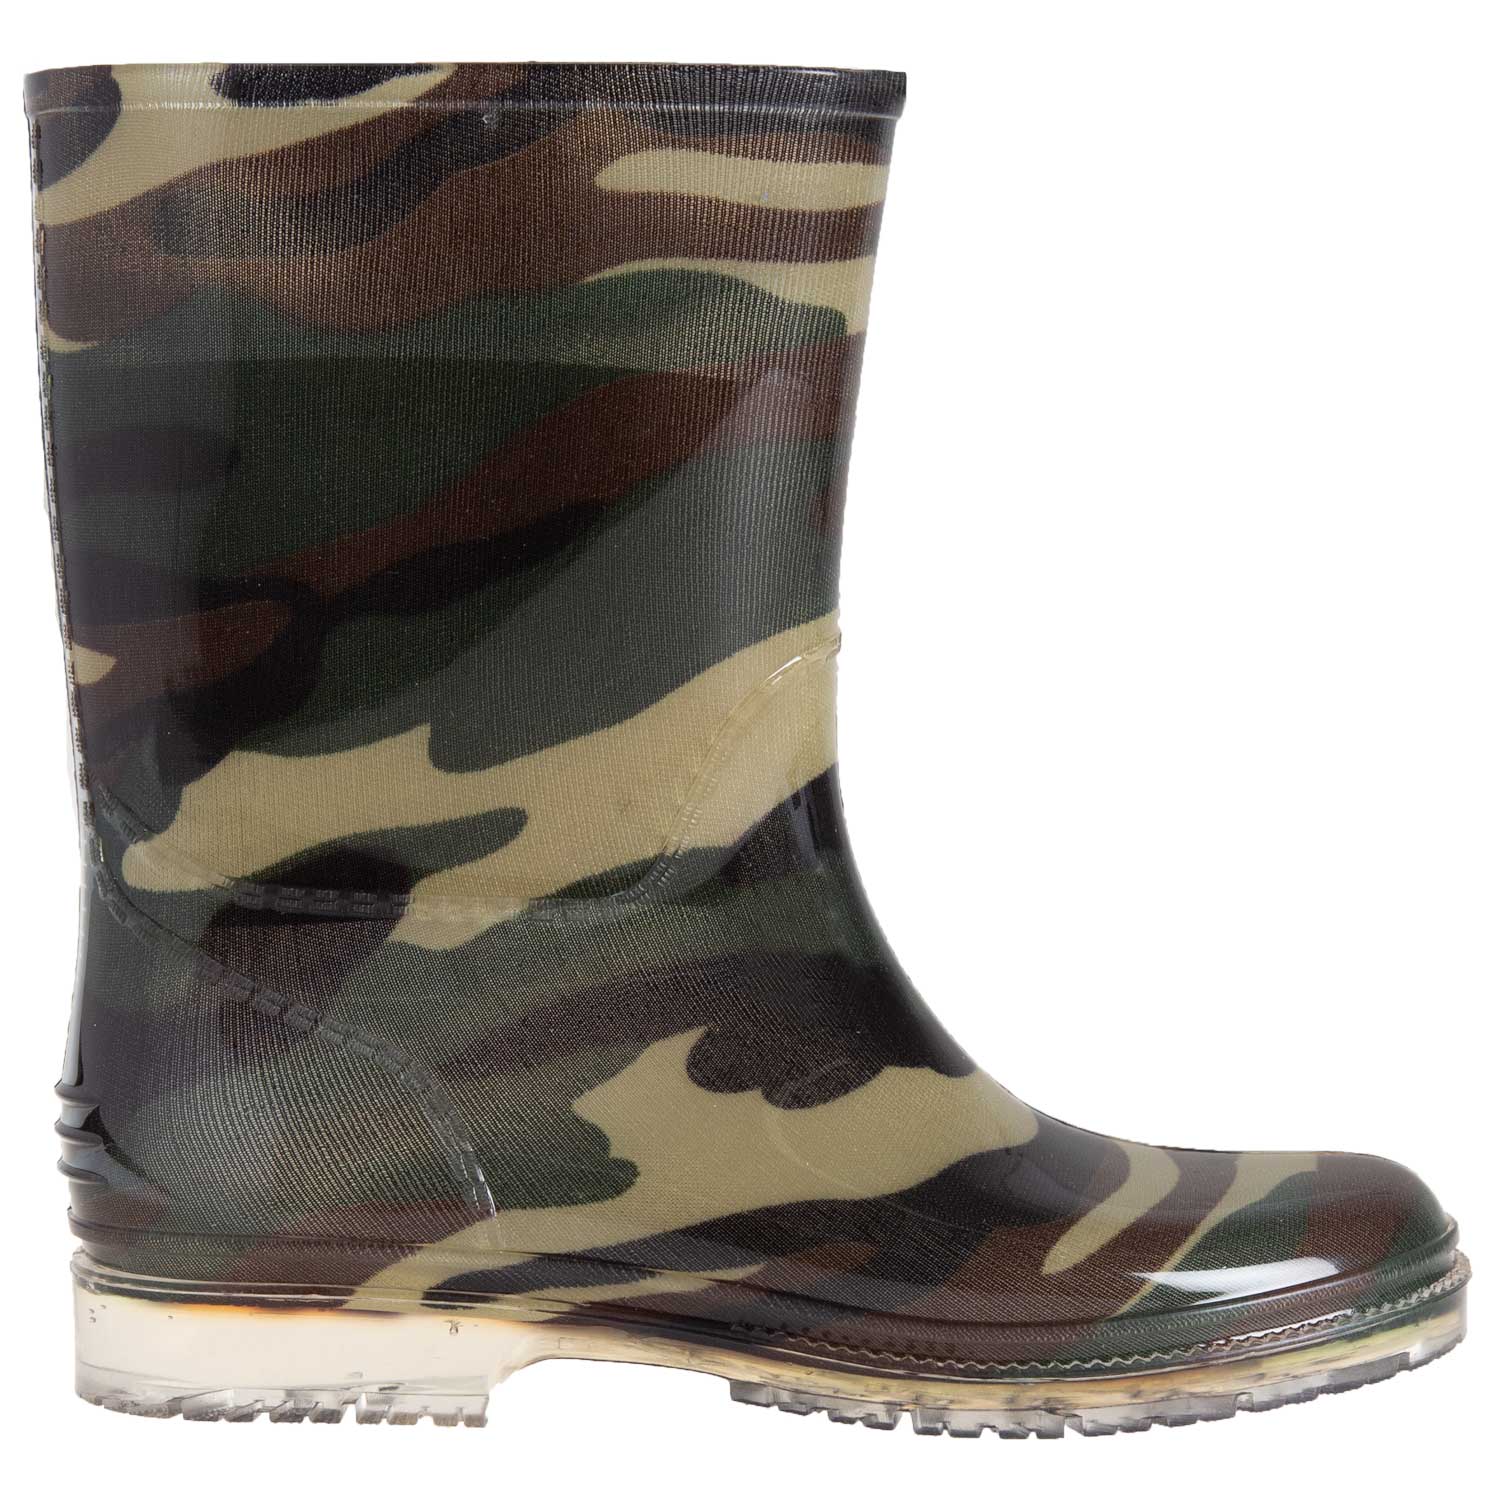 Rubber rain boots - Camo, size 2